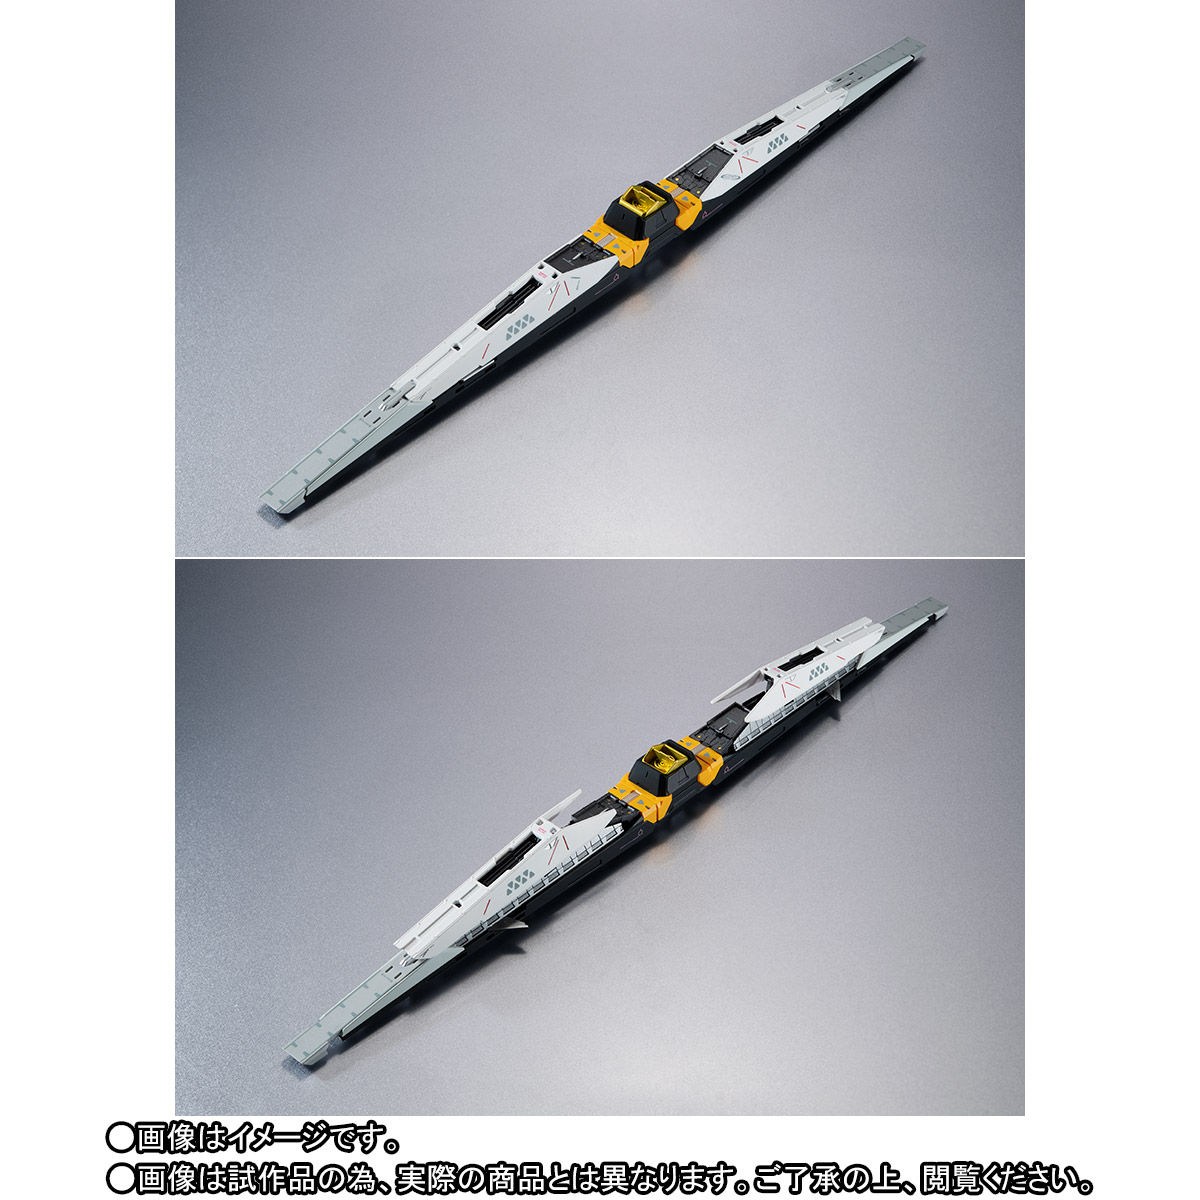 【限定販売】METAL STRUCTURE 解体匠機 RX-93 νガンダム専用オプションパーツ『フィン・ファンネル』可動フィギュア-004